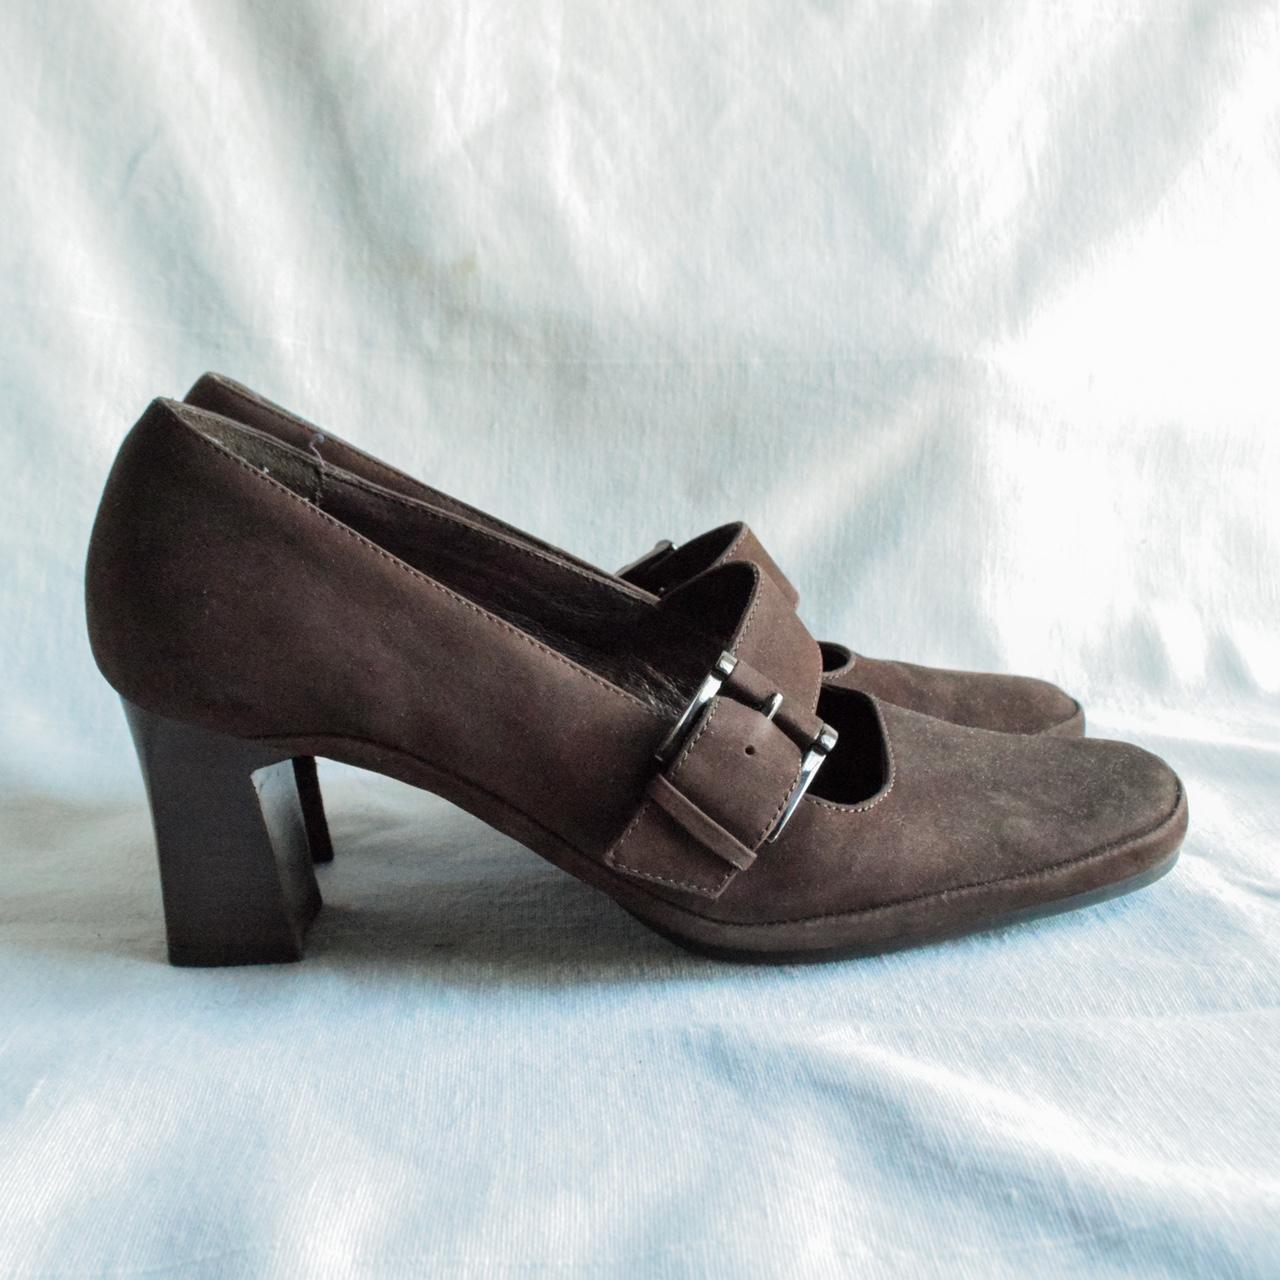 Adorable dark brown kitten heel shoes. Super dark... - Depop